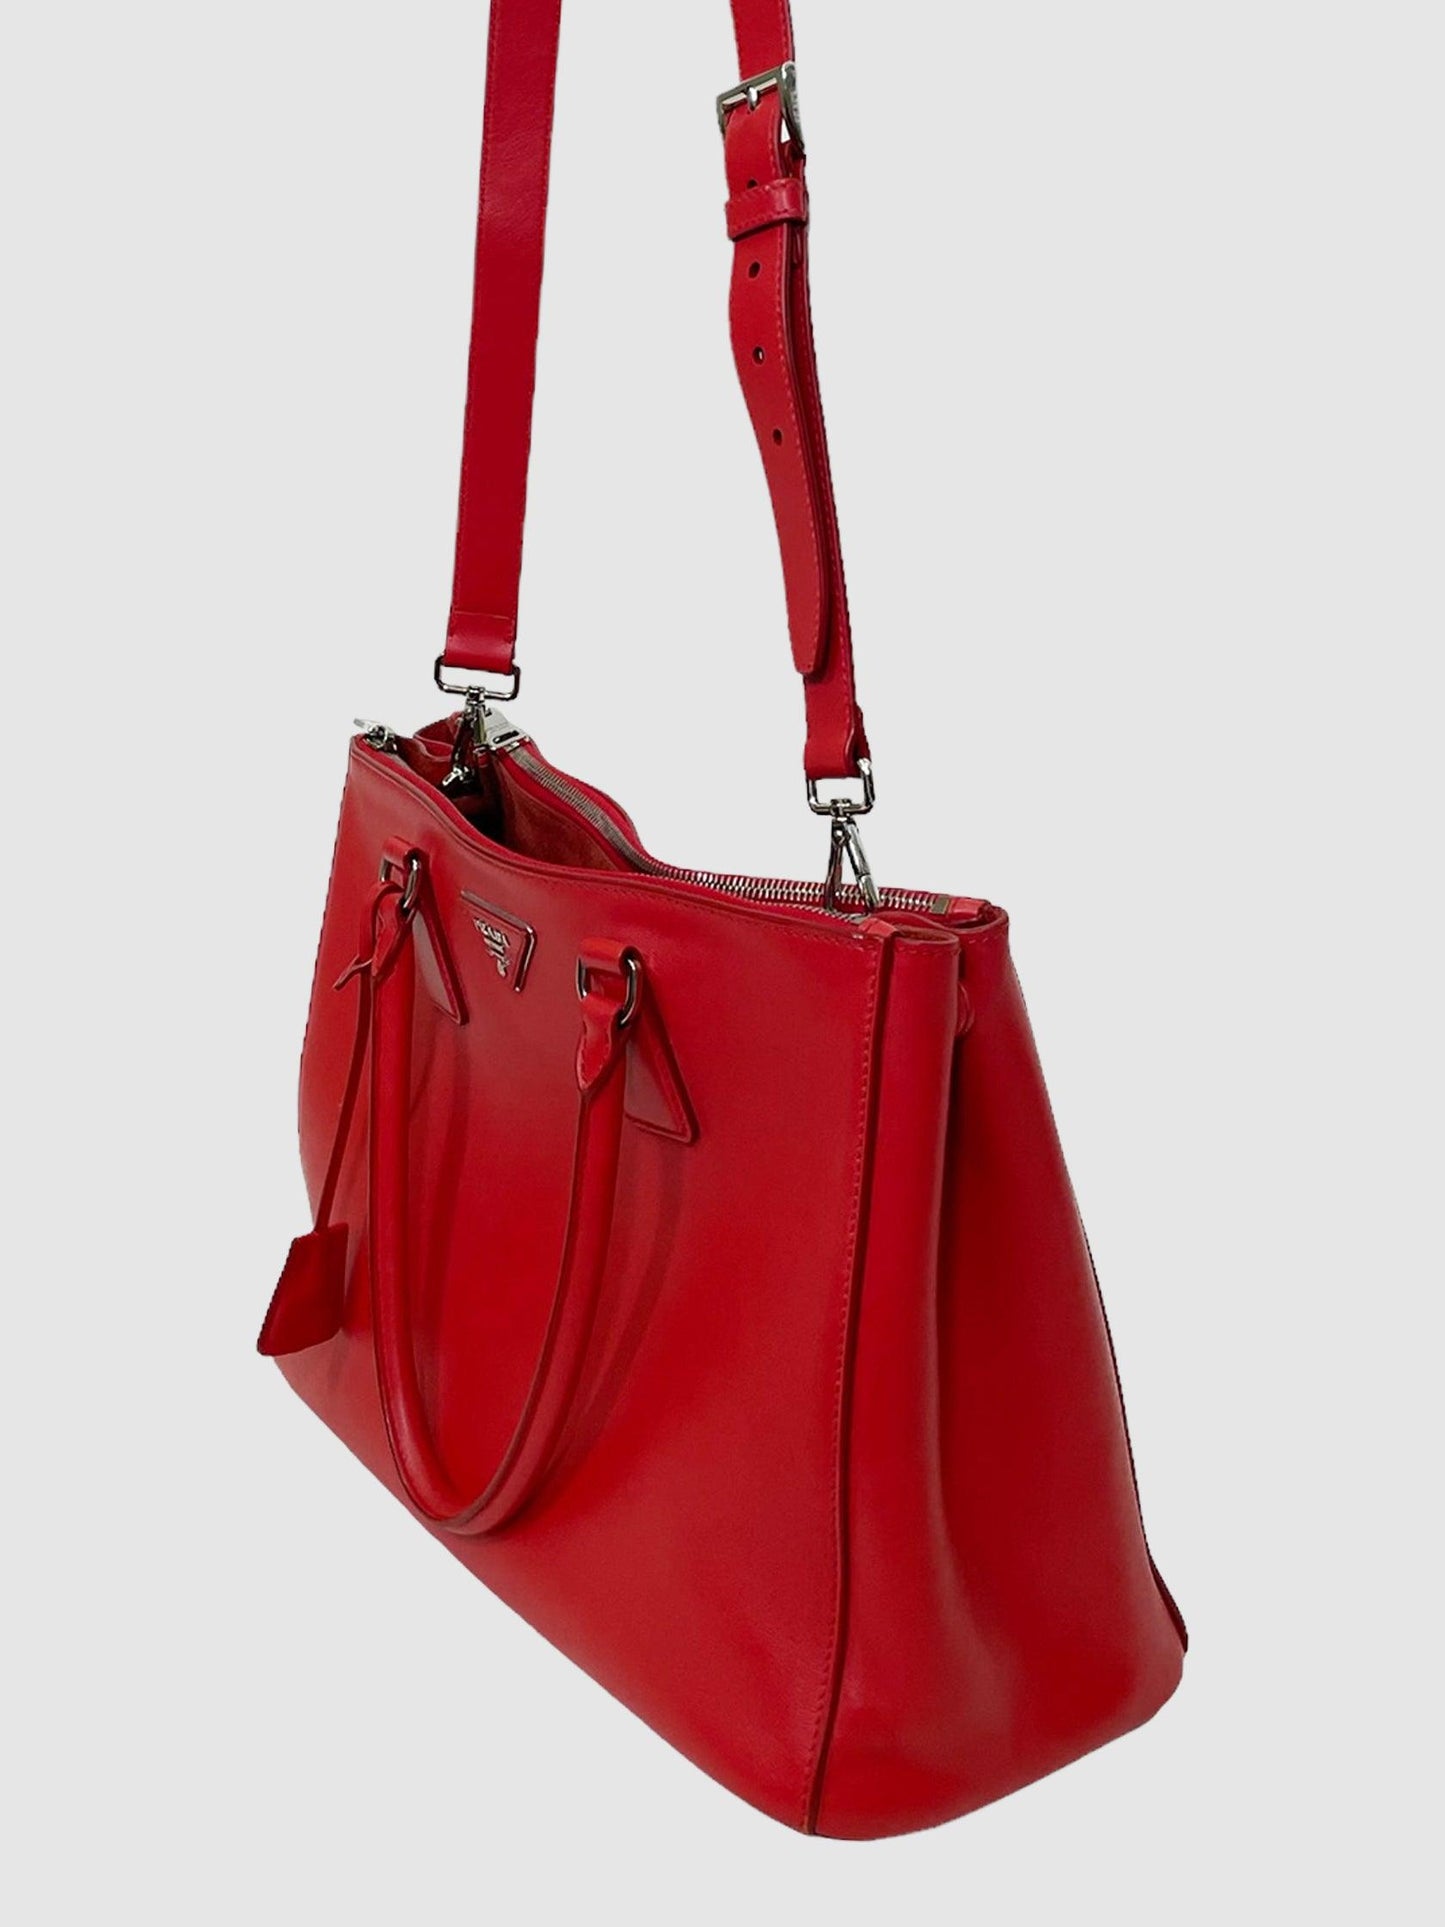 Prada Red Galleria Lux Leather Handbag Large